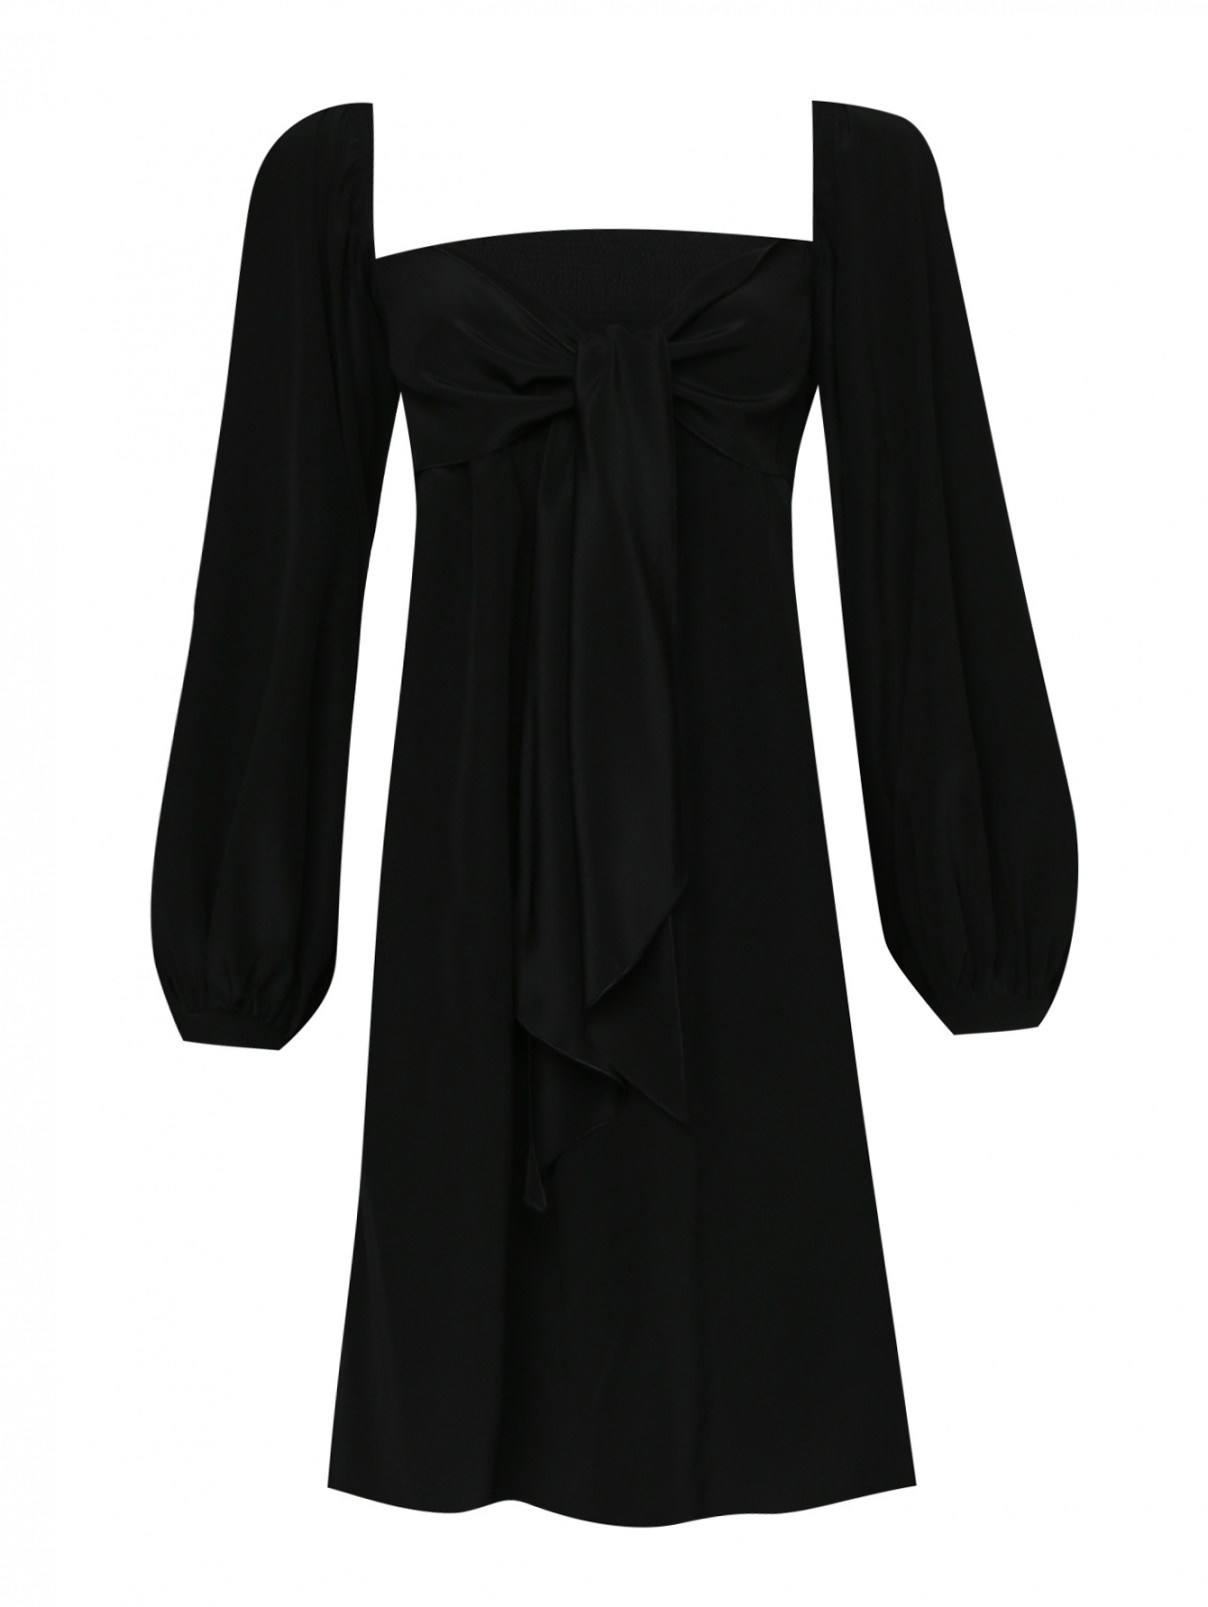 Платье из шелка с открытыми плечами Dorothee Schumacher  –  Общий вид  – Цвет:  Черный